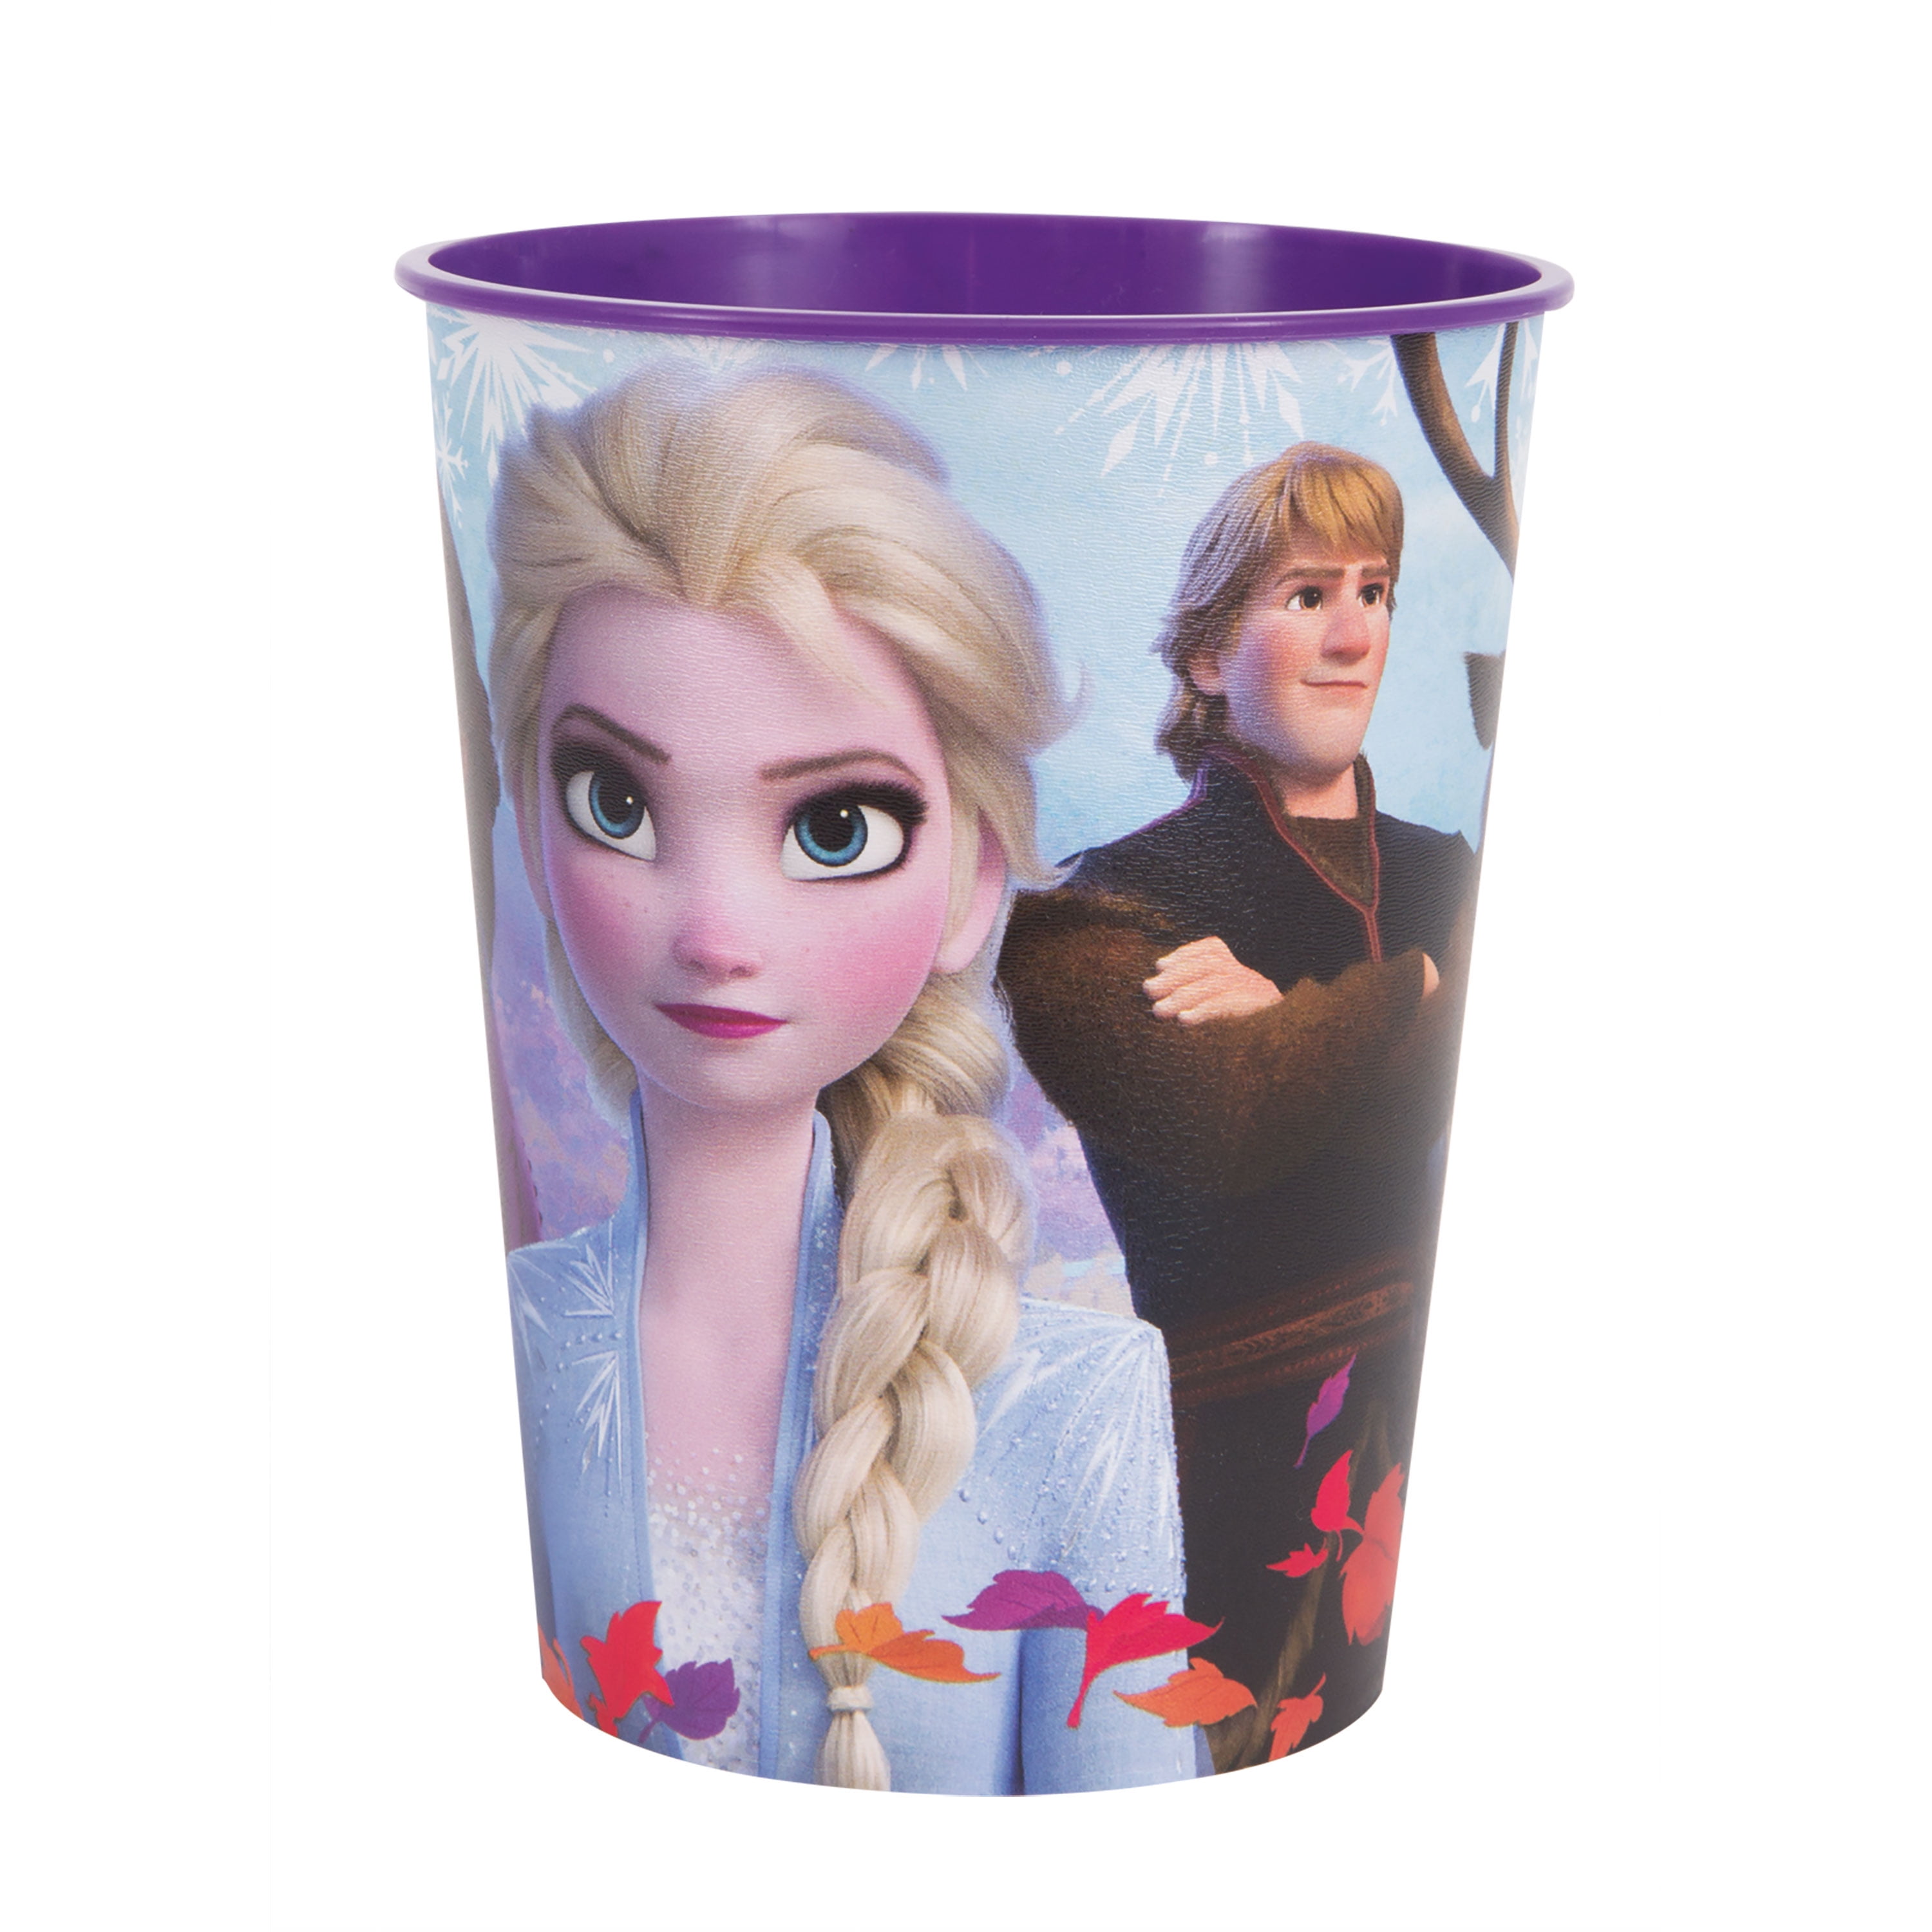 Disney Frozen 2 Plastic 16oz Cups, 4 Count, Size: 16 fl oz